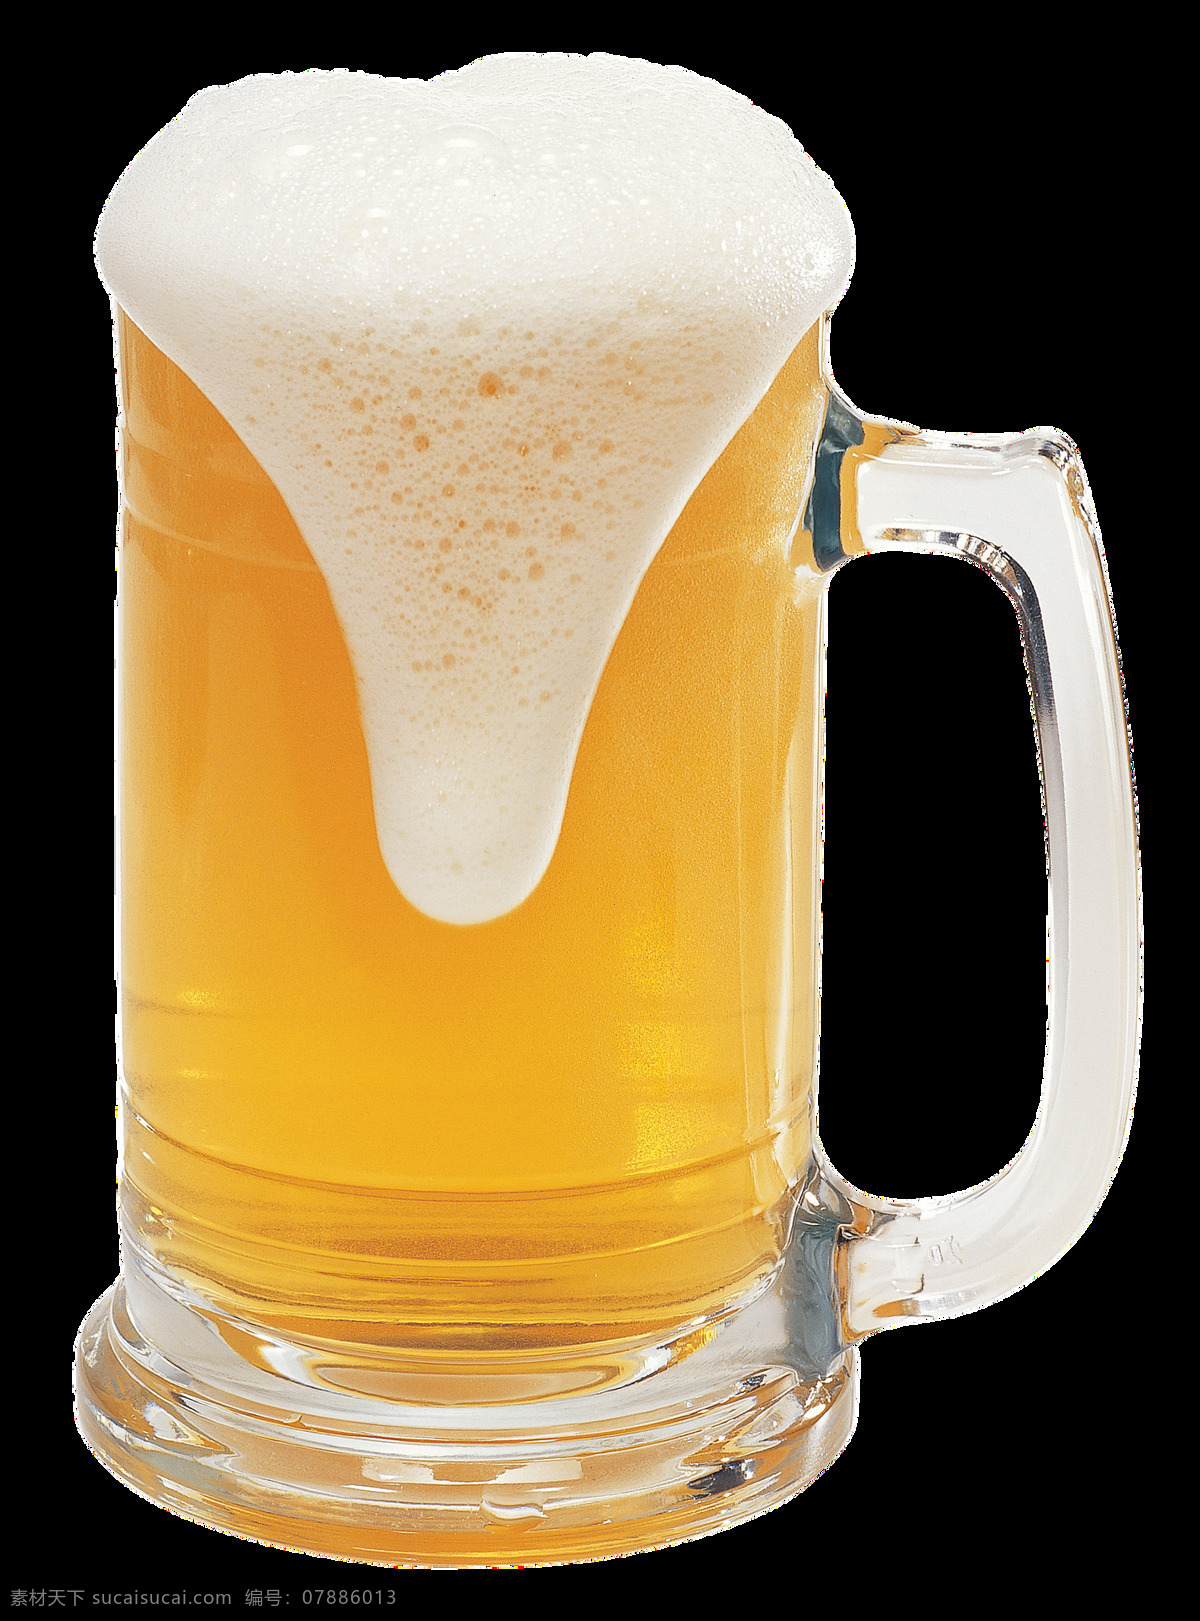 多种 啤酒杯 实物 元素 图案 啤酒 啤酒元素 异形啤酒杯 啤酒杯图案 啤酒溢出 装满的啤酒杯 啤酒装饰图案 各类啤酒杯